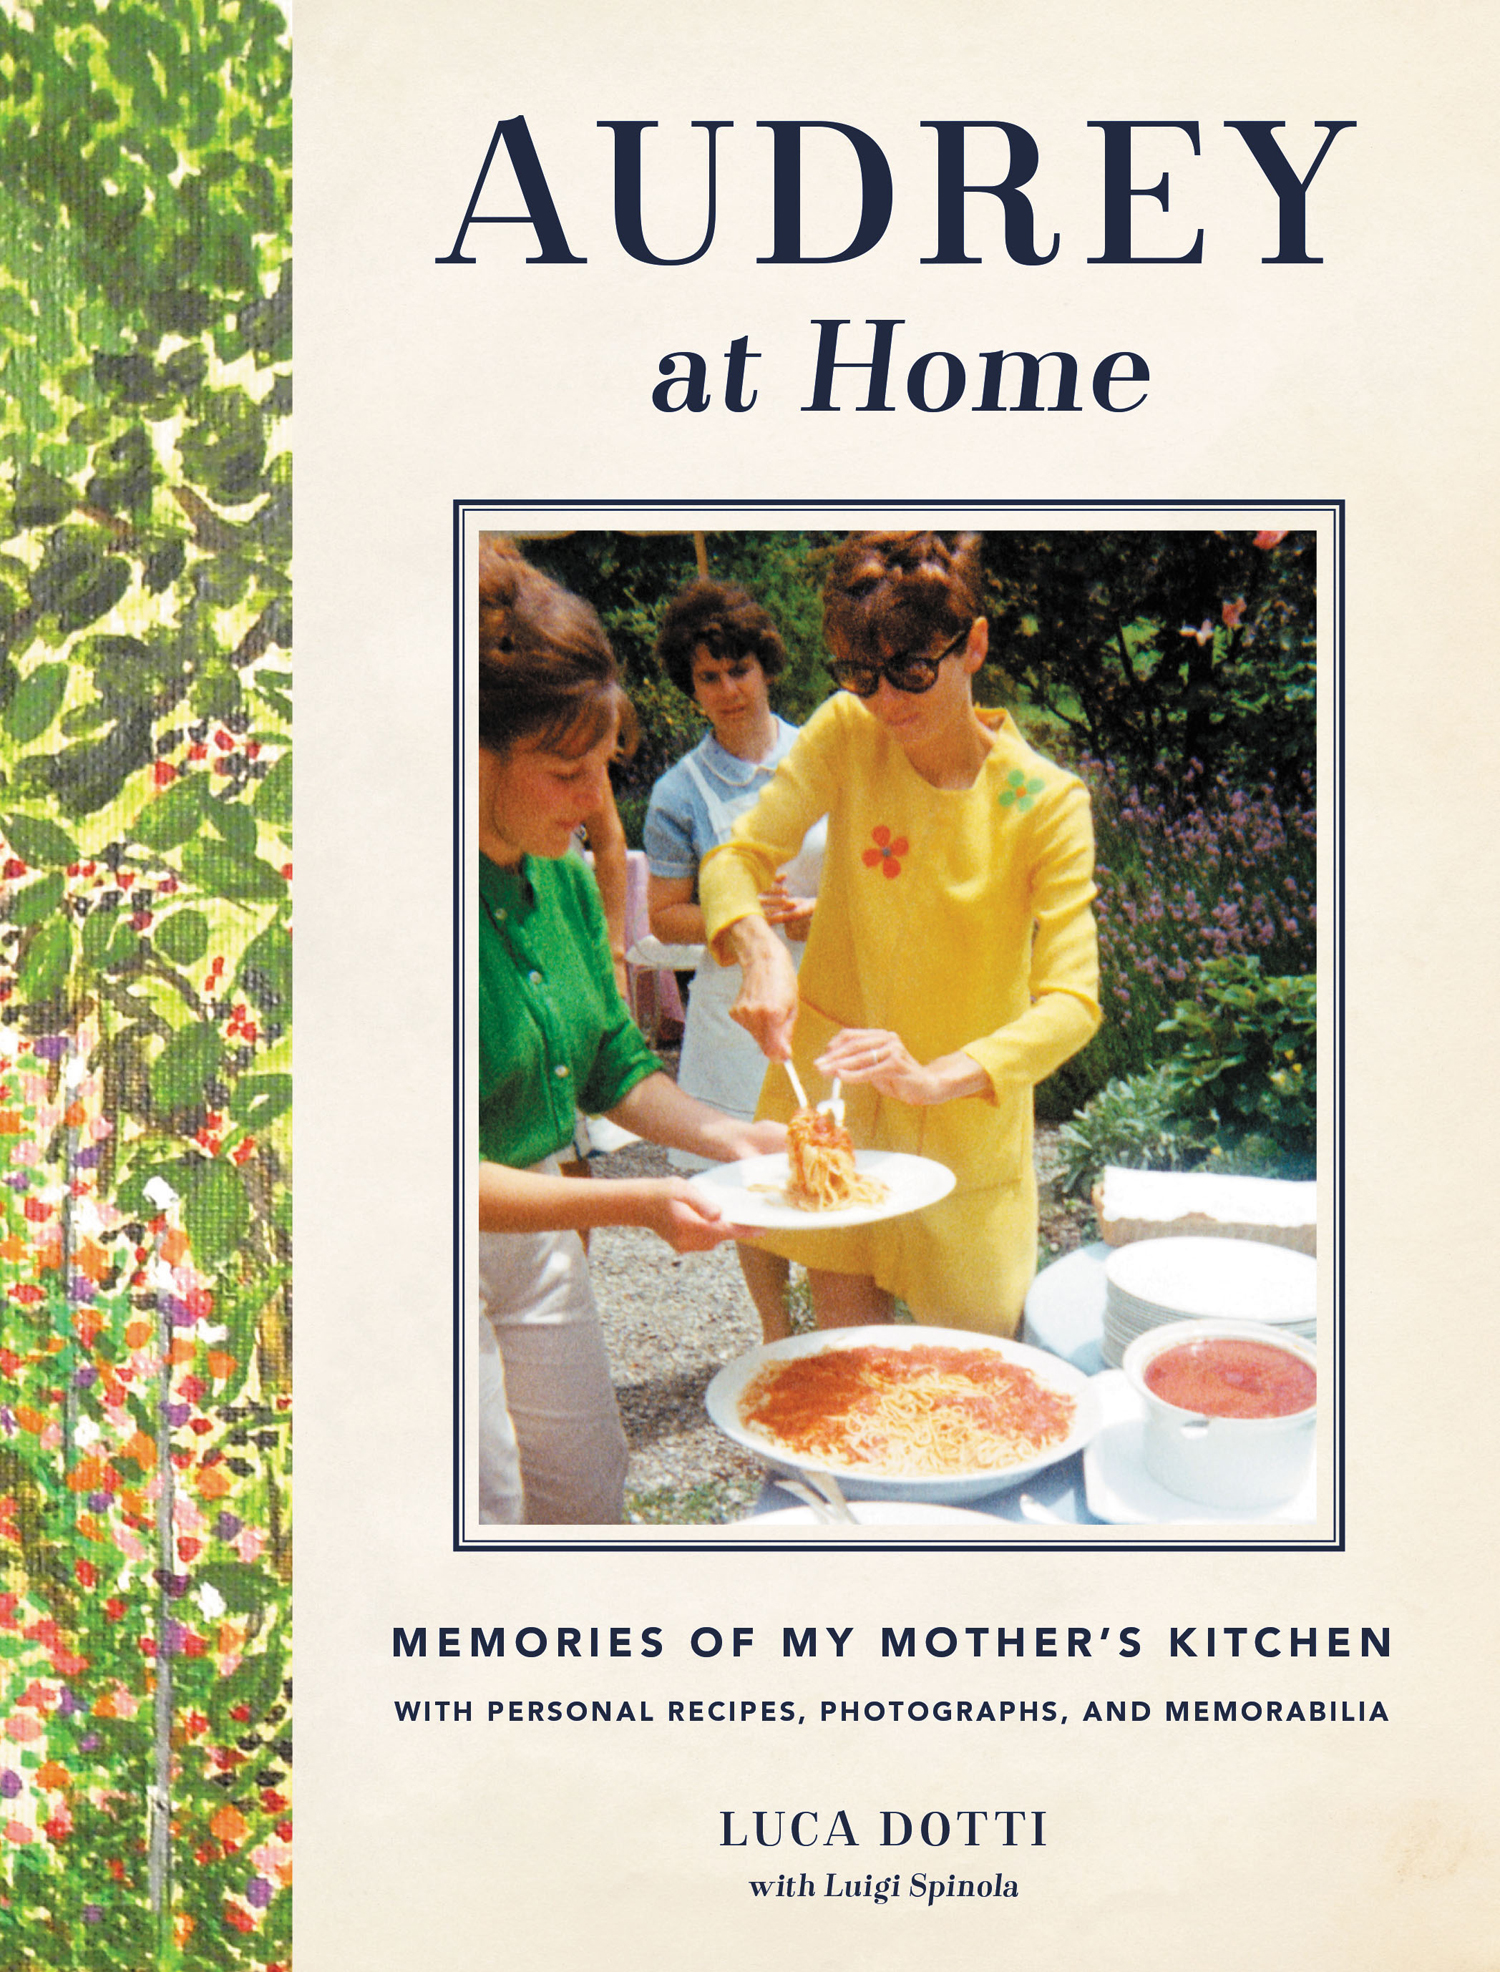 Το βιβλίο “Audrey at Home” είναι ο μυστικός της κόσμος, η ζωή της όπως τη «μάζεψε» κομμάτι-κομμάτι ο γιος της